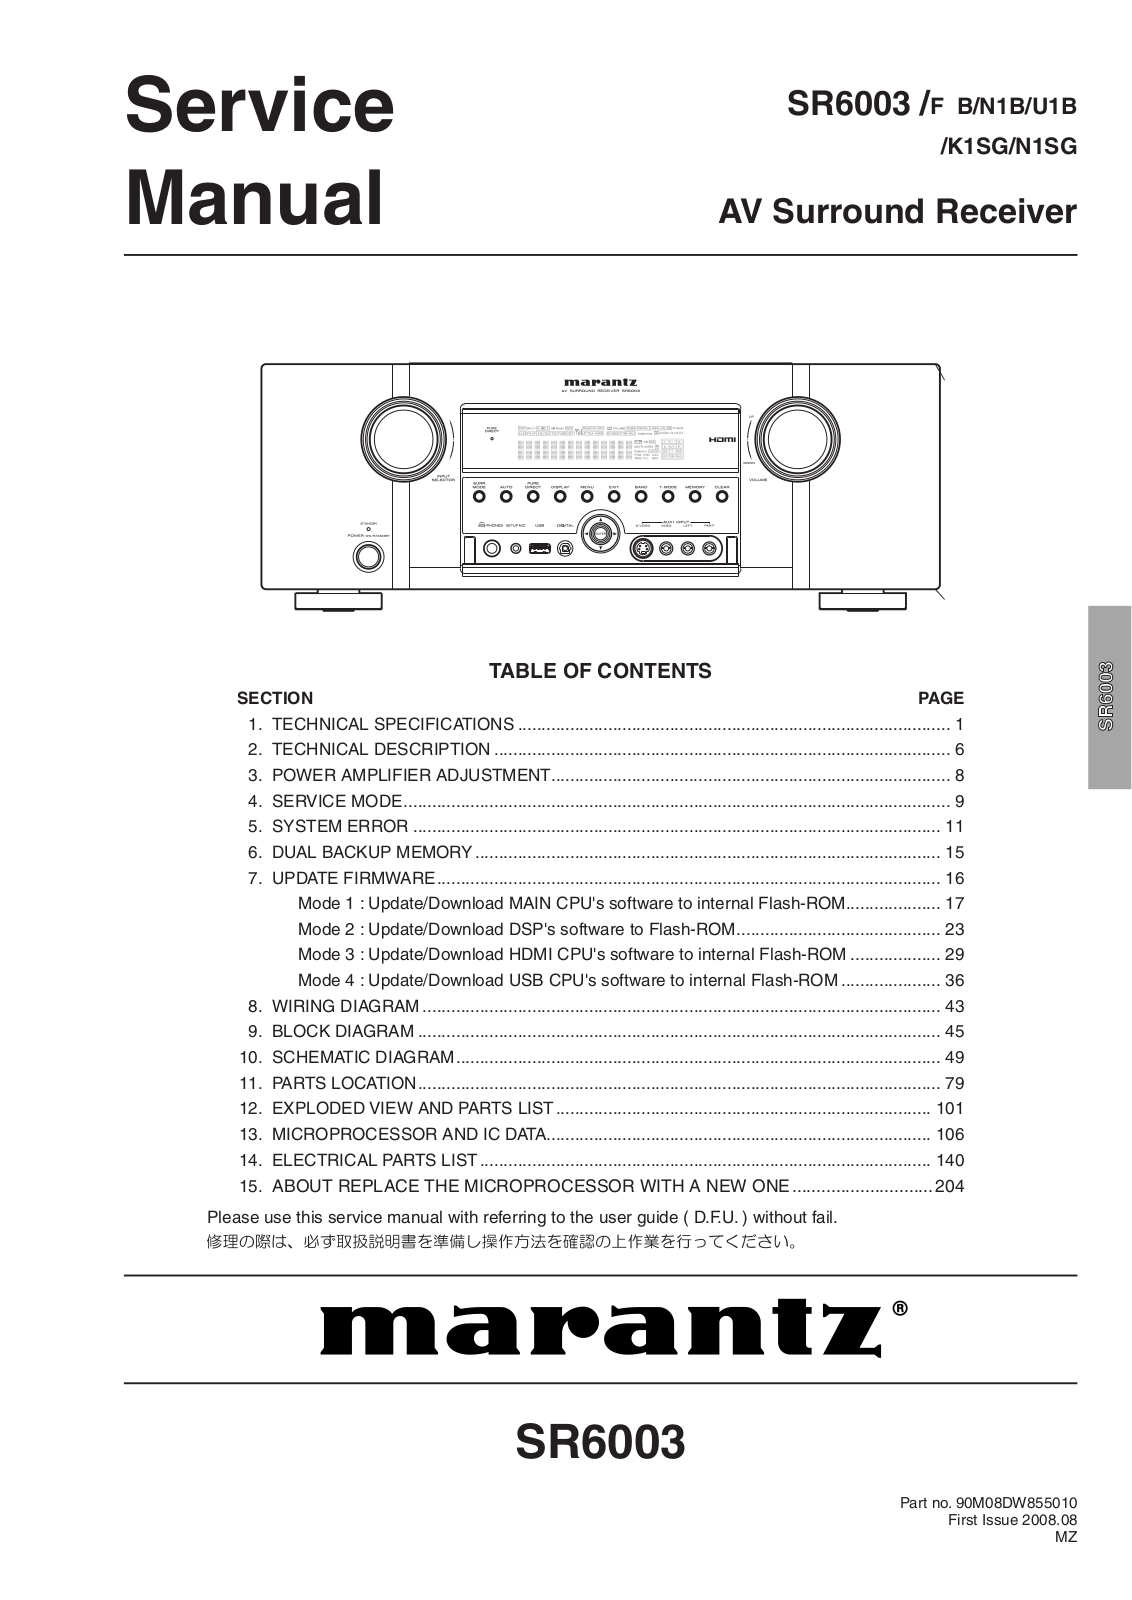 Marantz SR-6003 Service Manual